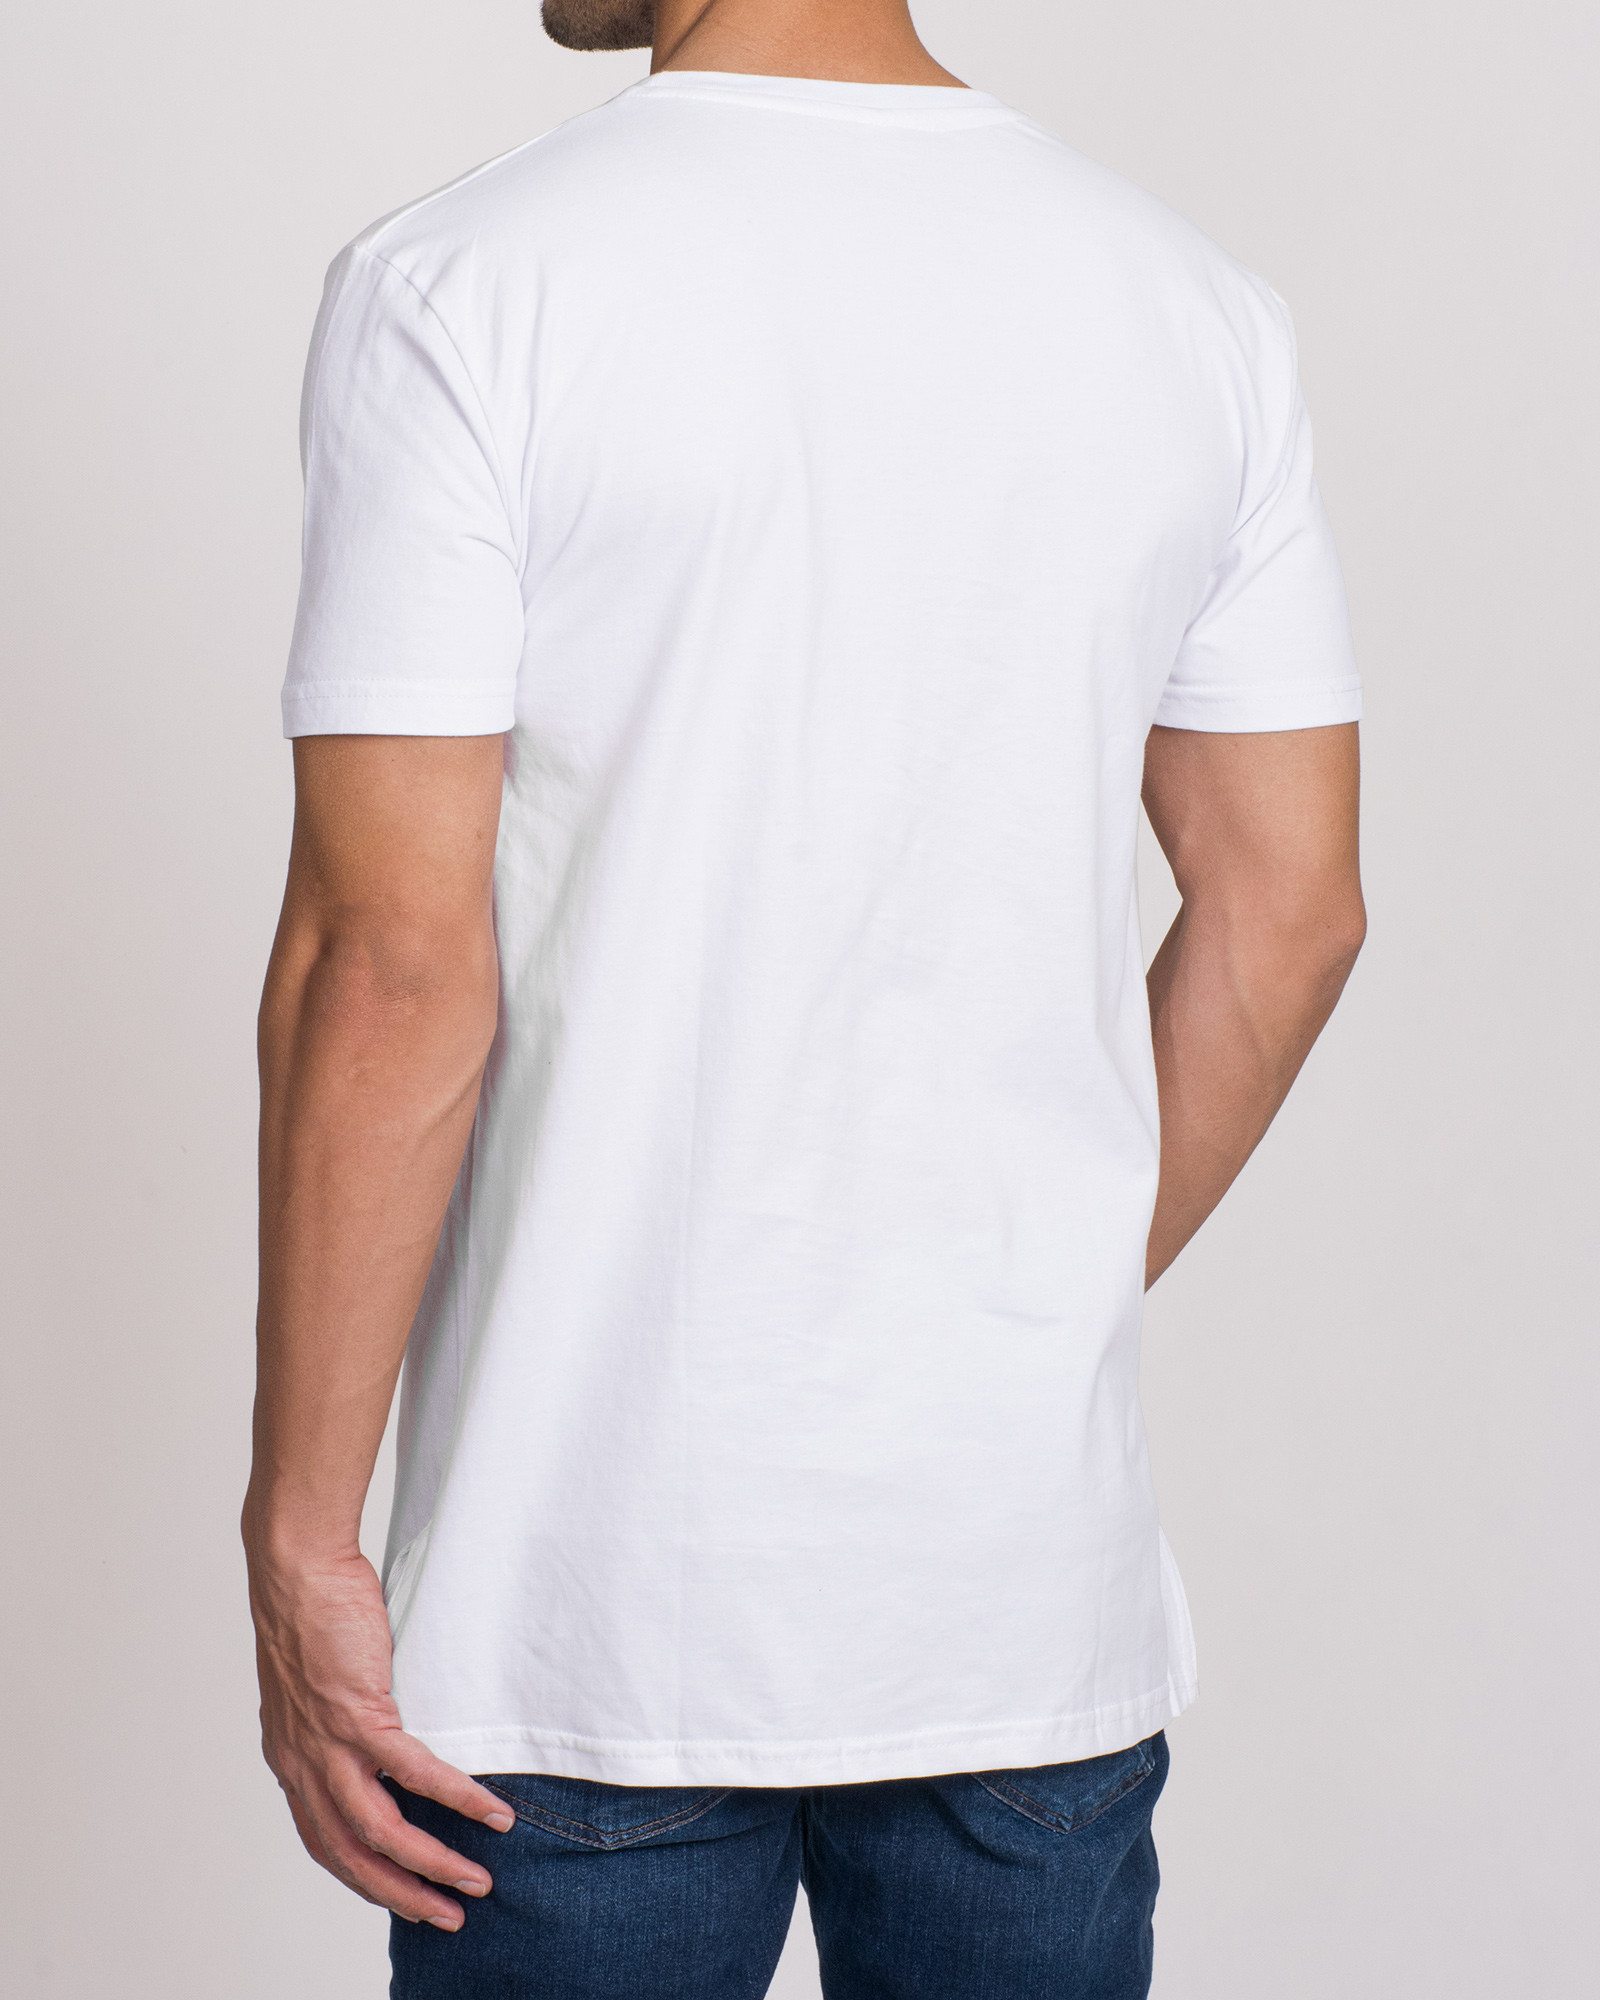 خرید تیشرت آستین کوتاه مردانه چاپدار سفید 20129362